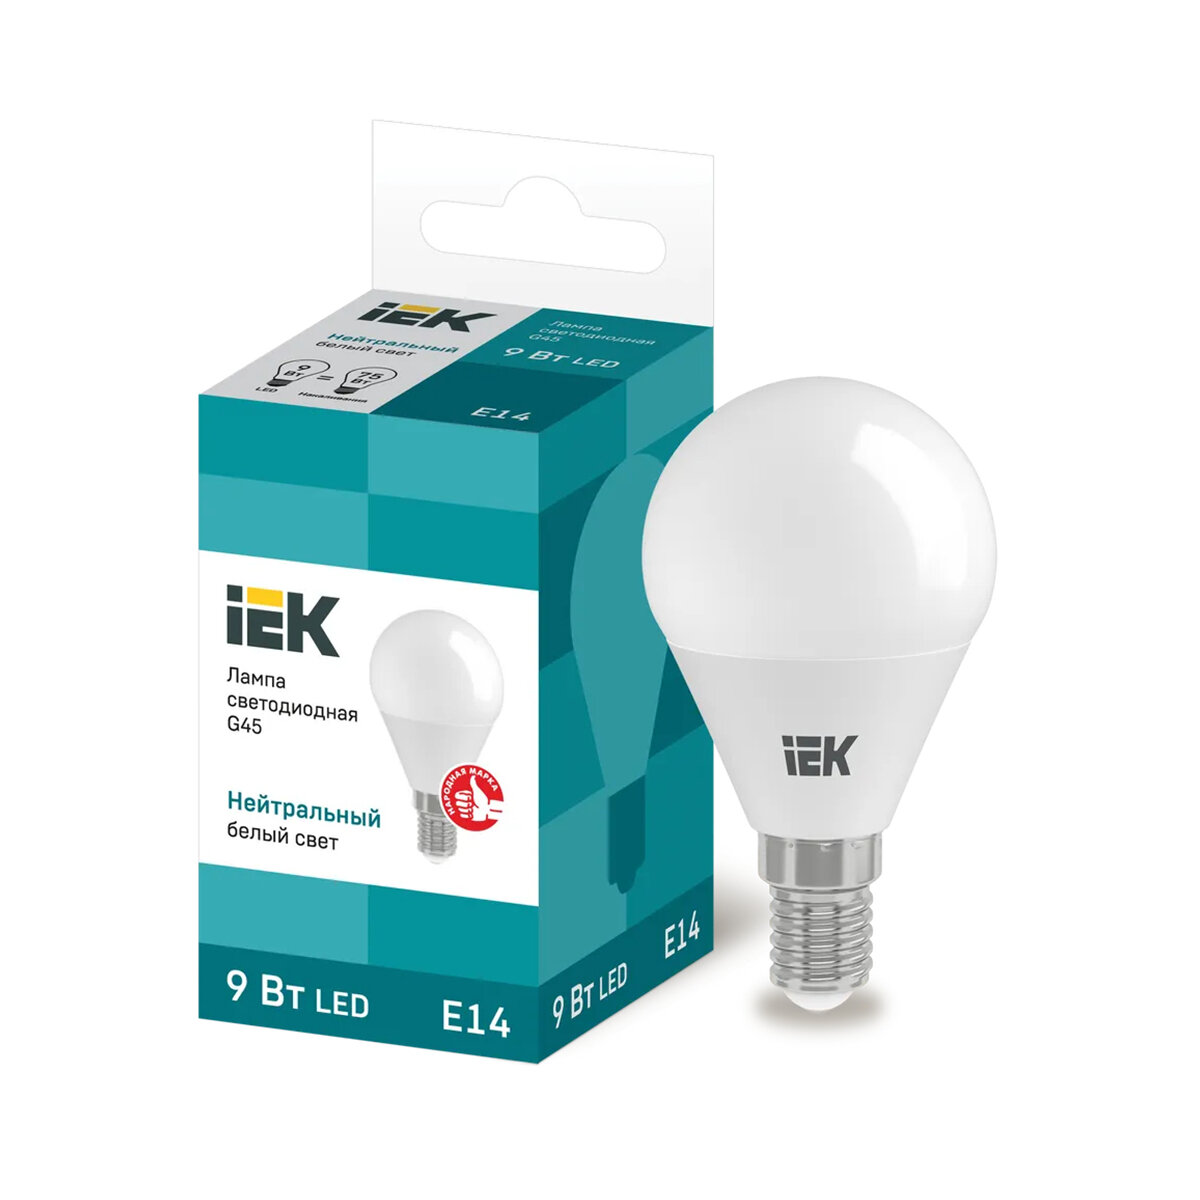 Лампа светодиодная LED IEK Шар, E14, G45, 9 Вт, 4000 K, нейтральный свет